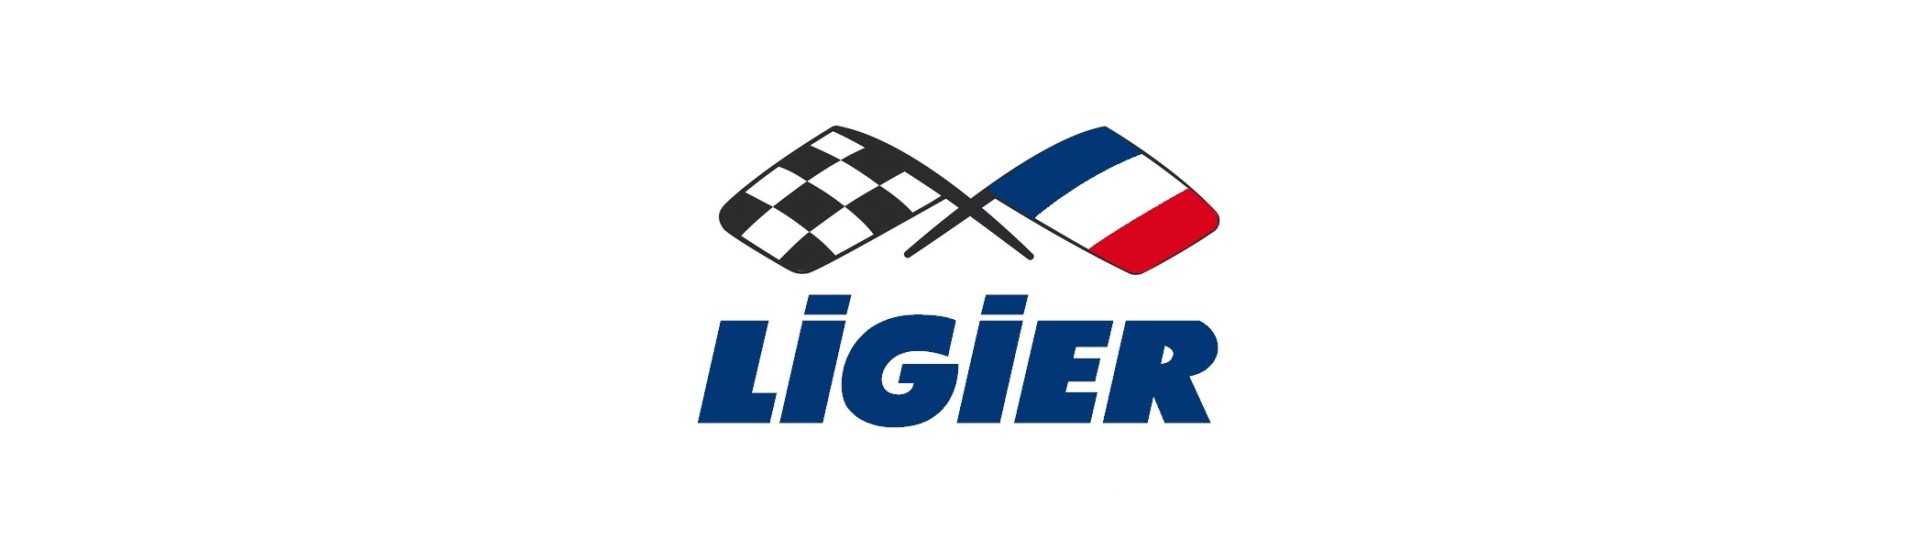 Cavo freno a mano al miglior prezzo per auto senza permesso Ligier